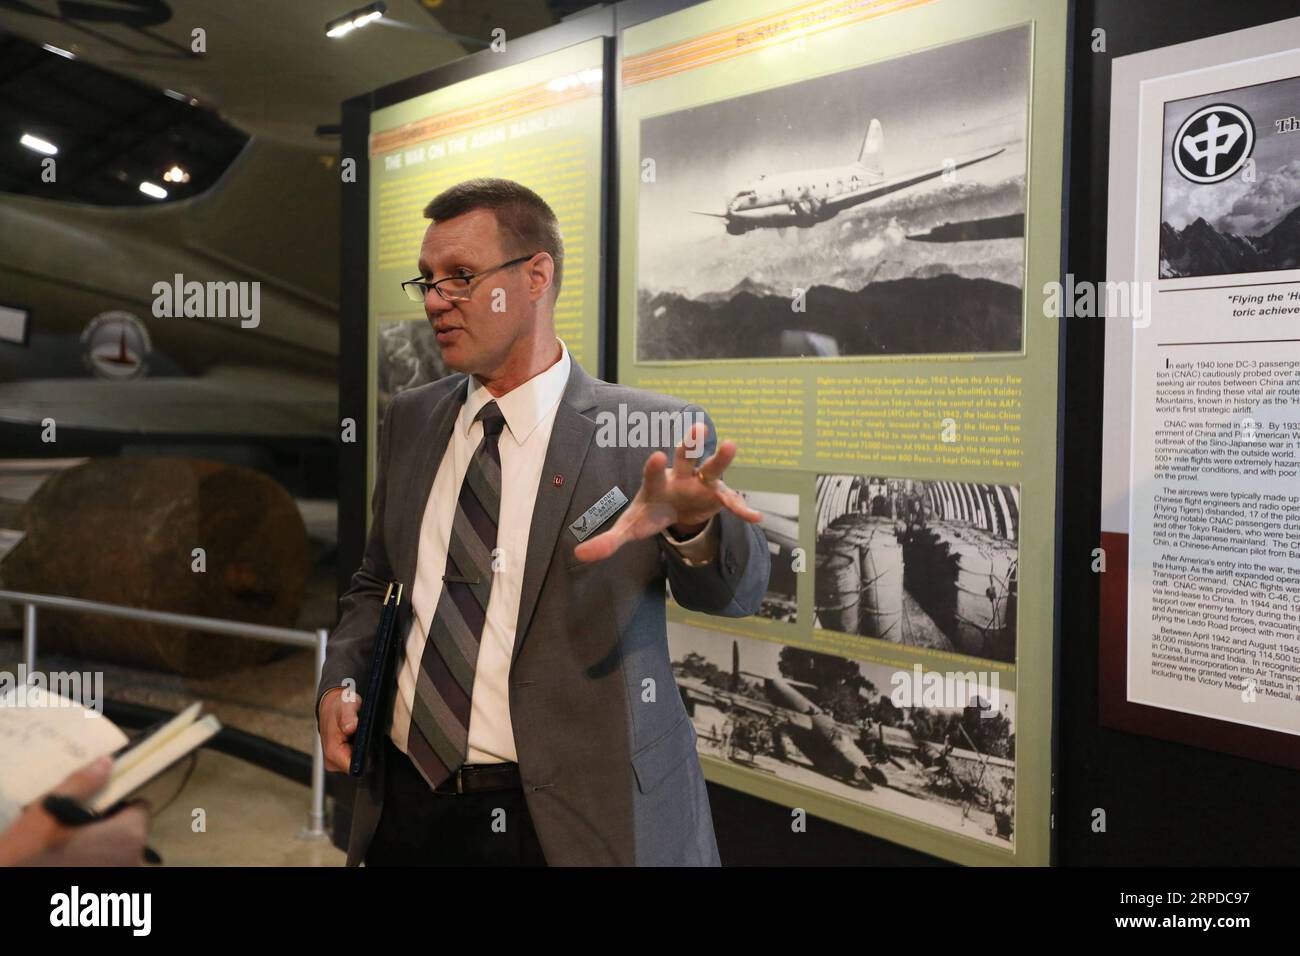 (190730) -- NEW YORK, 30 juillet 2019 -- Douglas Lantry, conservateur et historien du National Museum of the U.S. Air Force, présente l'histoire du Hump dans la galerie de la Seconde Guerre mondiale du National Museum of the U.S. Air Force à Dayton, Ohio, États-Unis, le 24 juillet 2019. Le Hump, ou la route de la mort au-dessus des montagnes de l'Himalaya, a été exploité conjointement par la Chine et les États-Unis de 1942 à 1945 pour transporter des fournitures militaires de l'Inde vers le sud-ouest de la Chine. Le Musée national de l'US Air Force expose plus de 360 avions et des milliers d'objets historiques qui apportent Banque D'Images